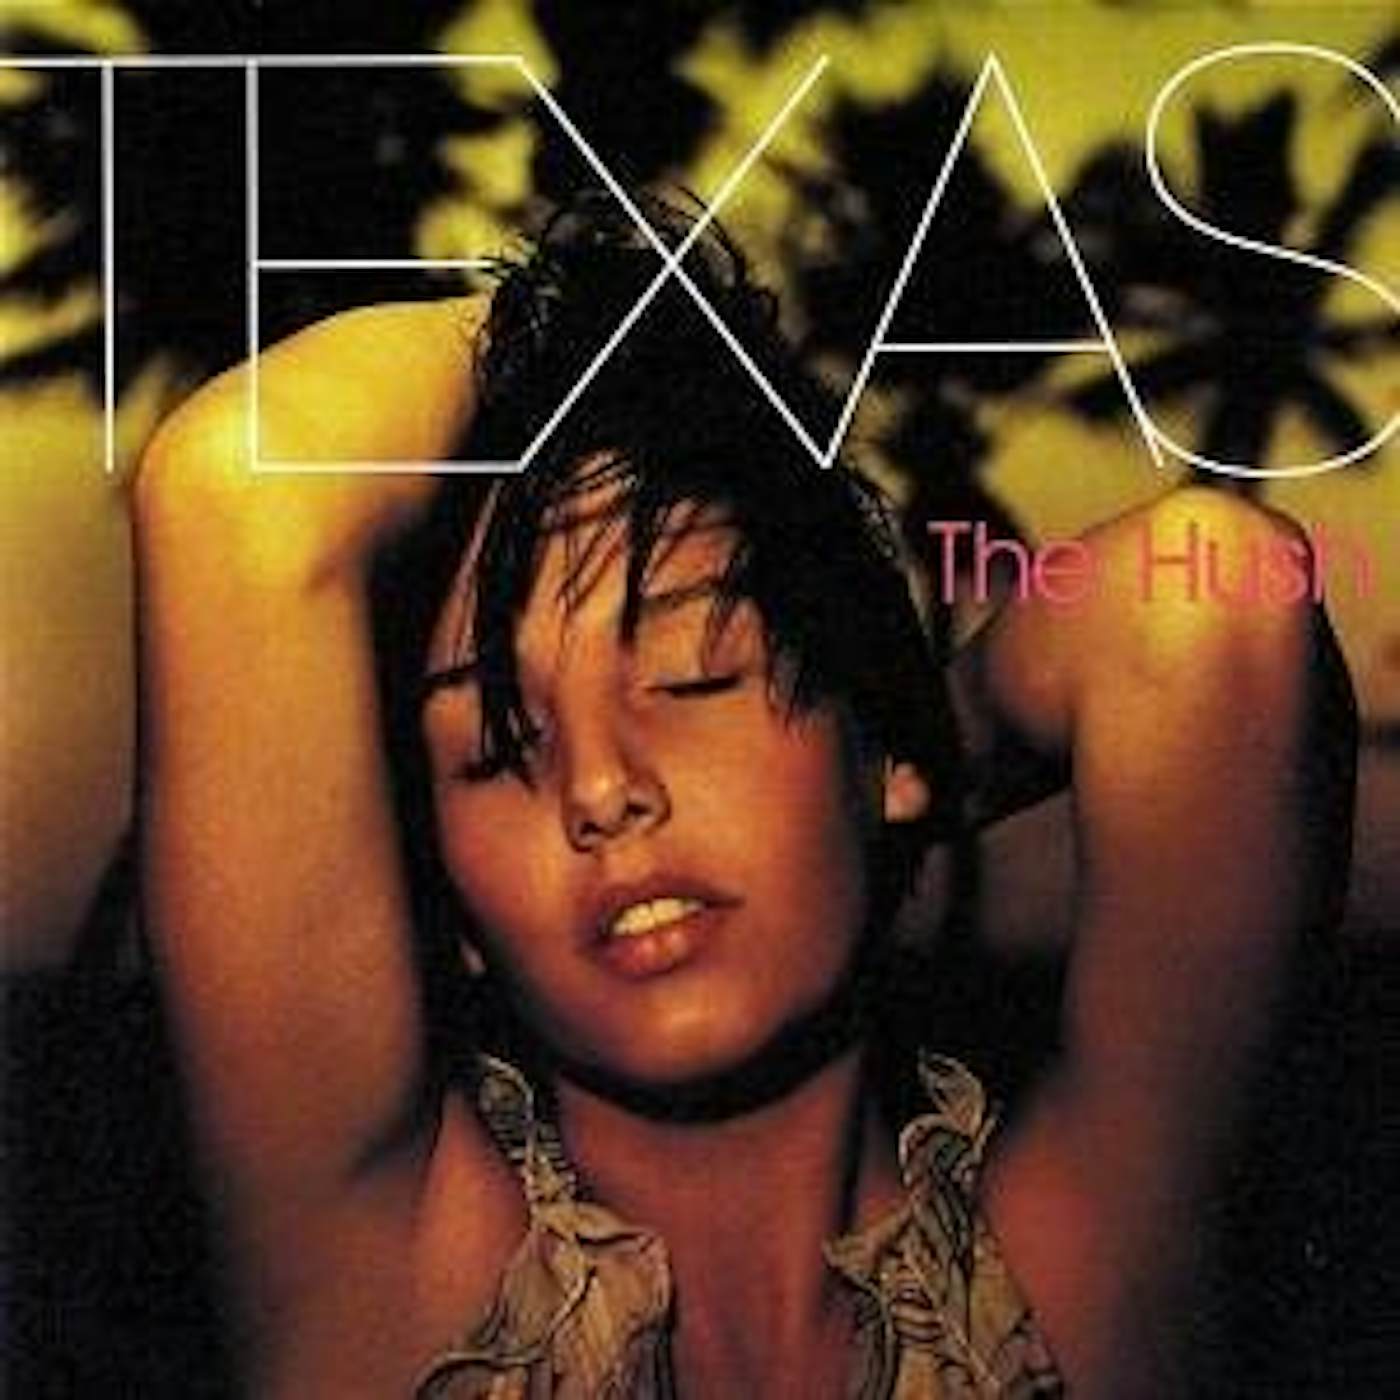 Texas HUSH CD